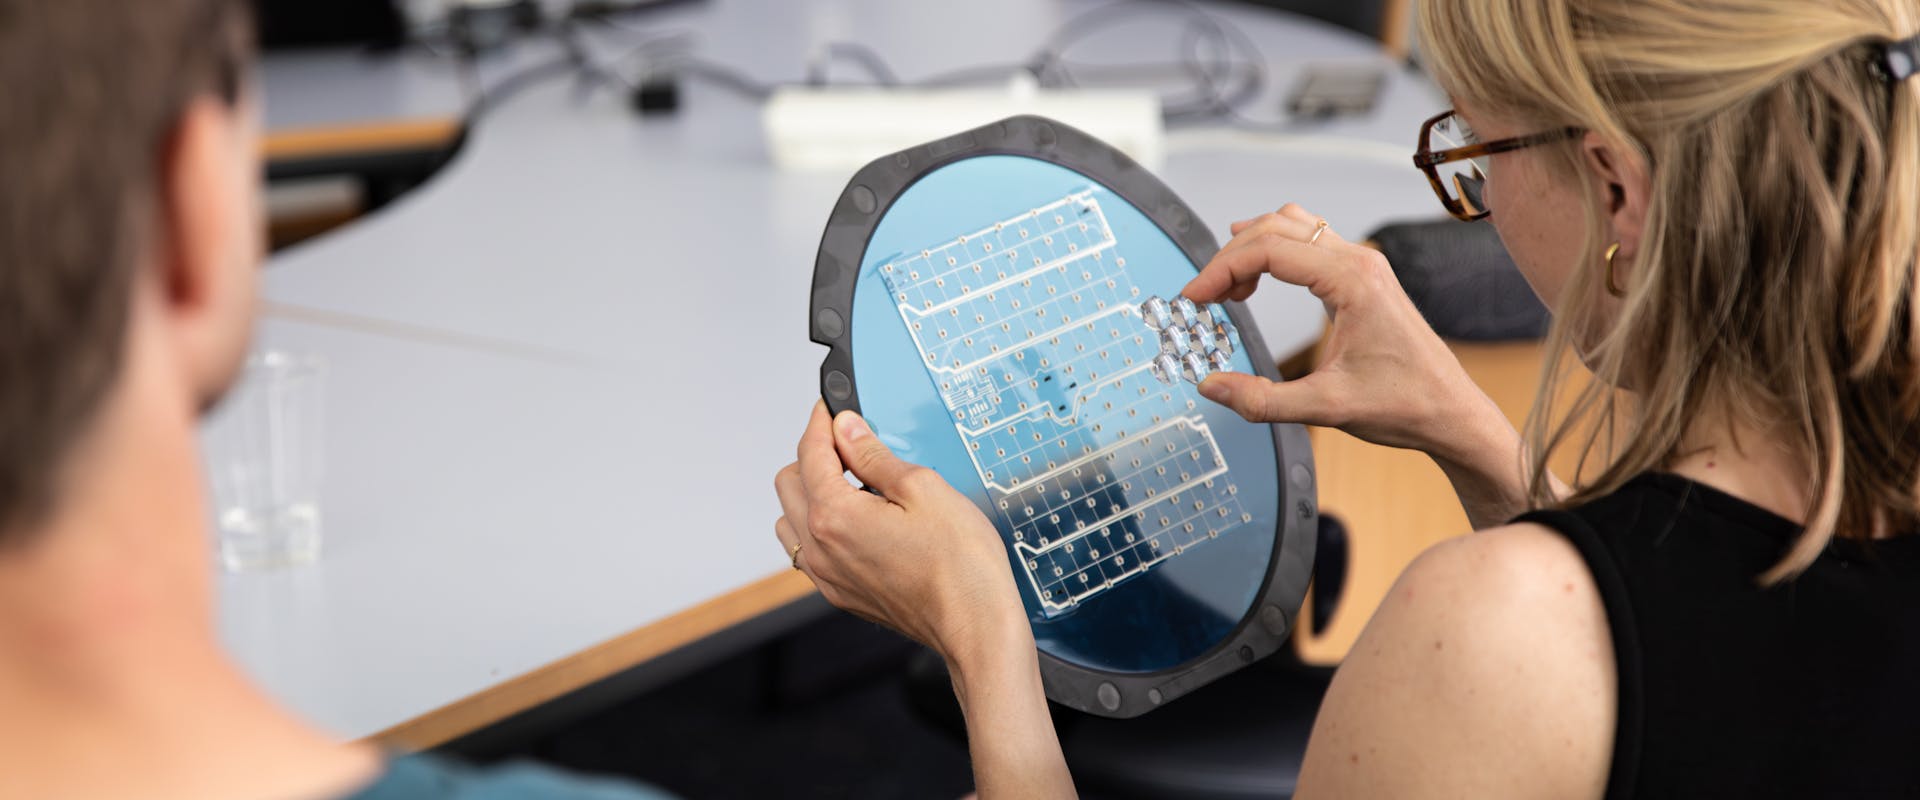 Femme examinant une cellule solaire